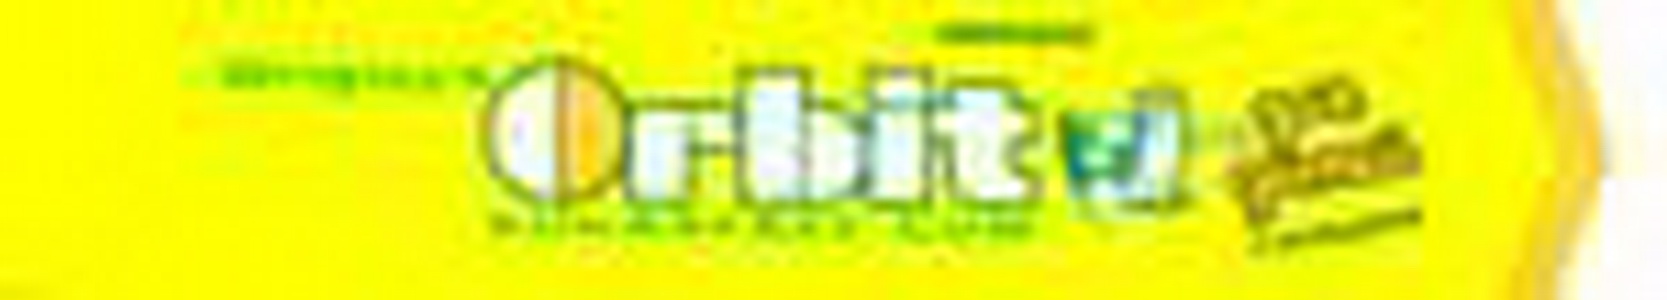 4009900386012 - Жевательная резинка "Orbit для детей - лимонадный", 230г.